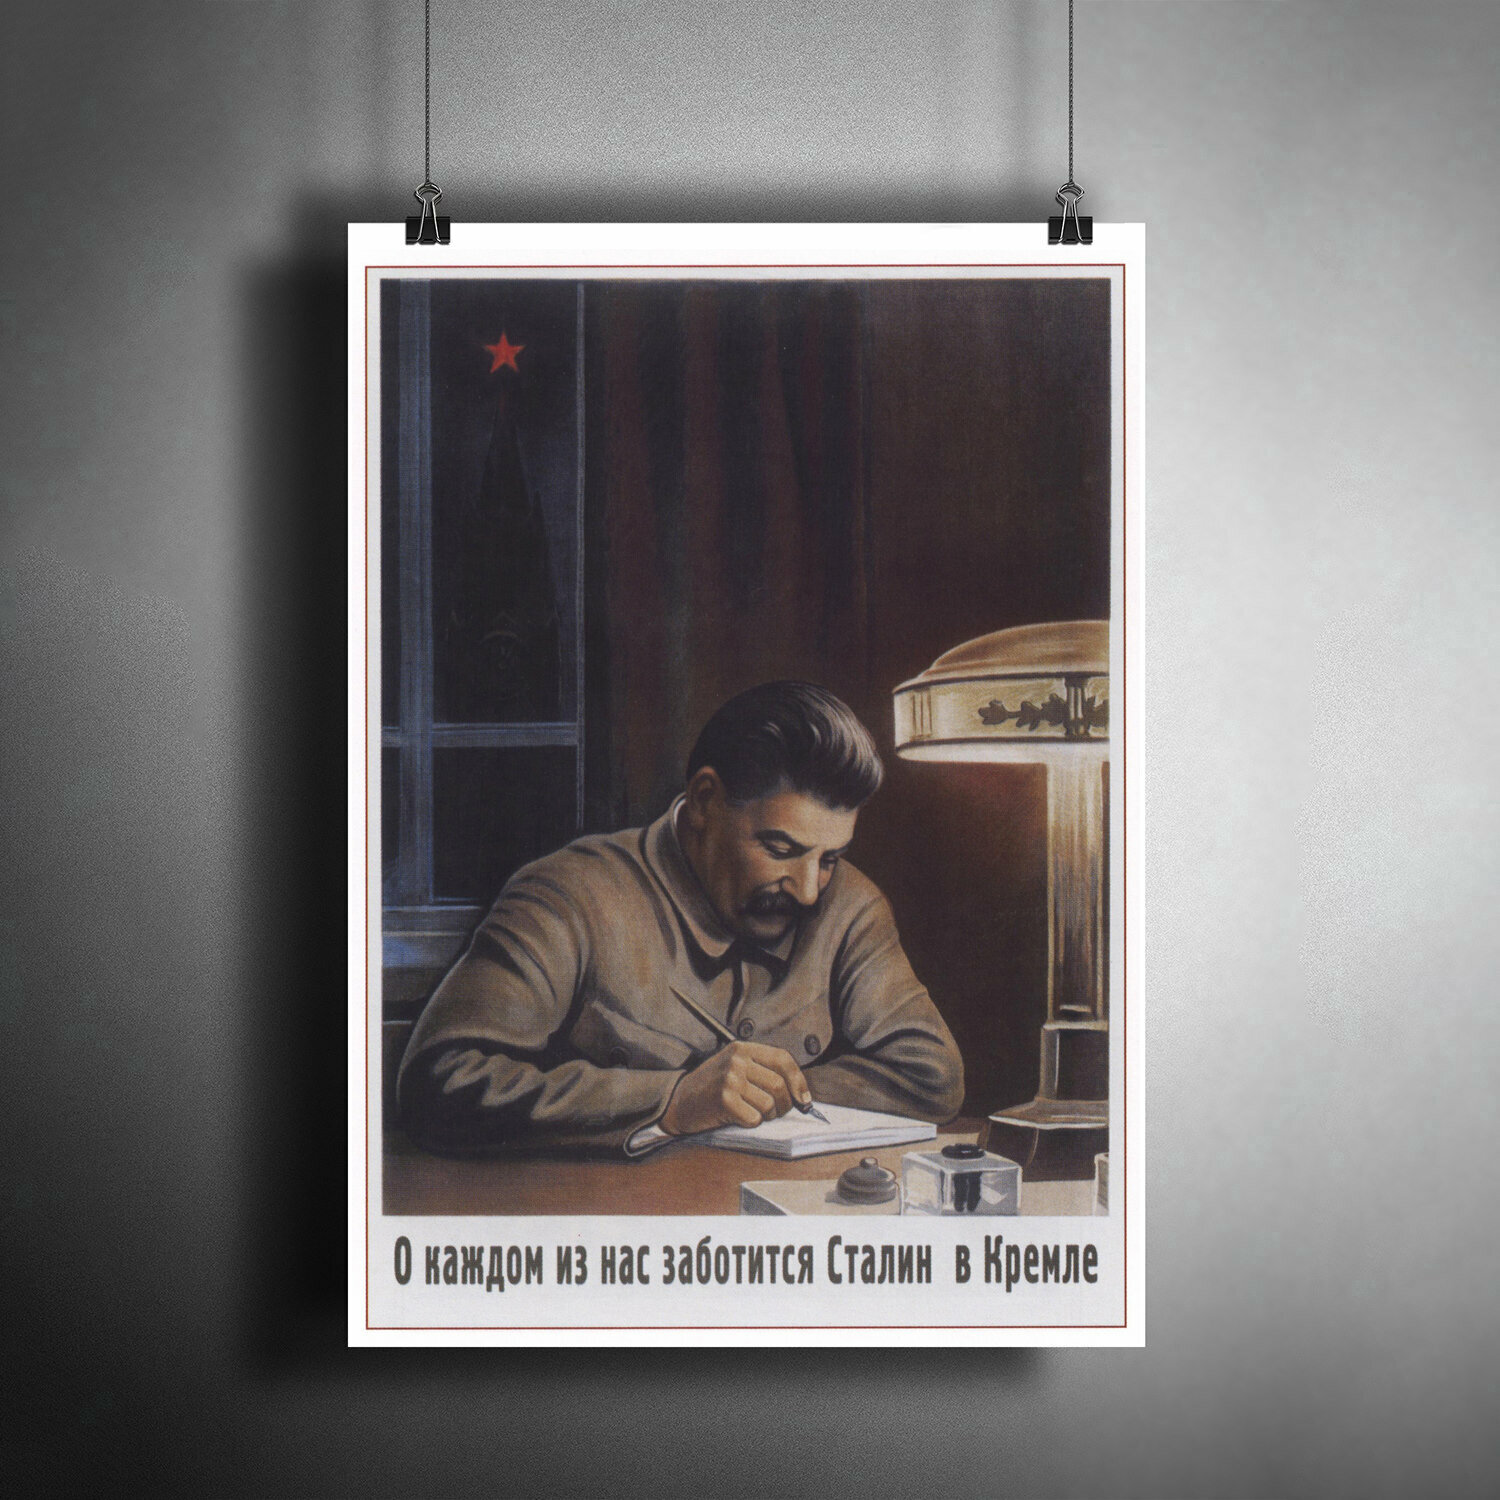 Постер для интерьера: И. В. Сталин, СССР / A3 (297 x 420 мм)